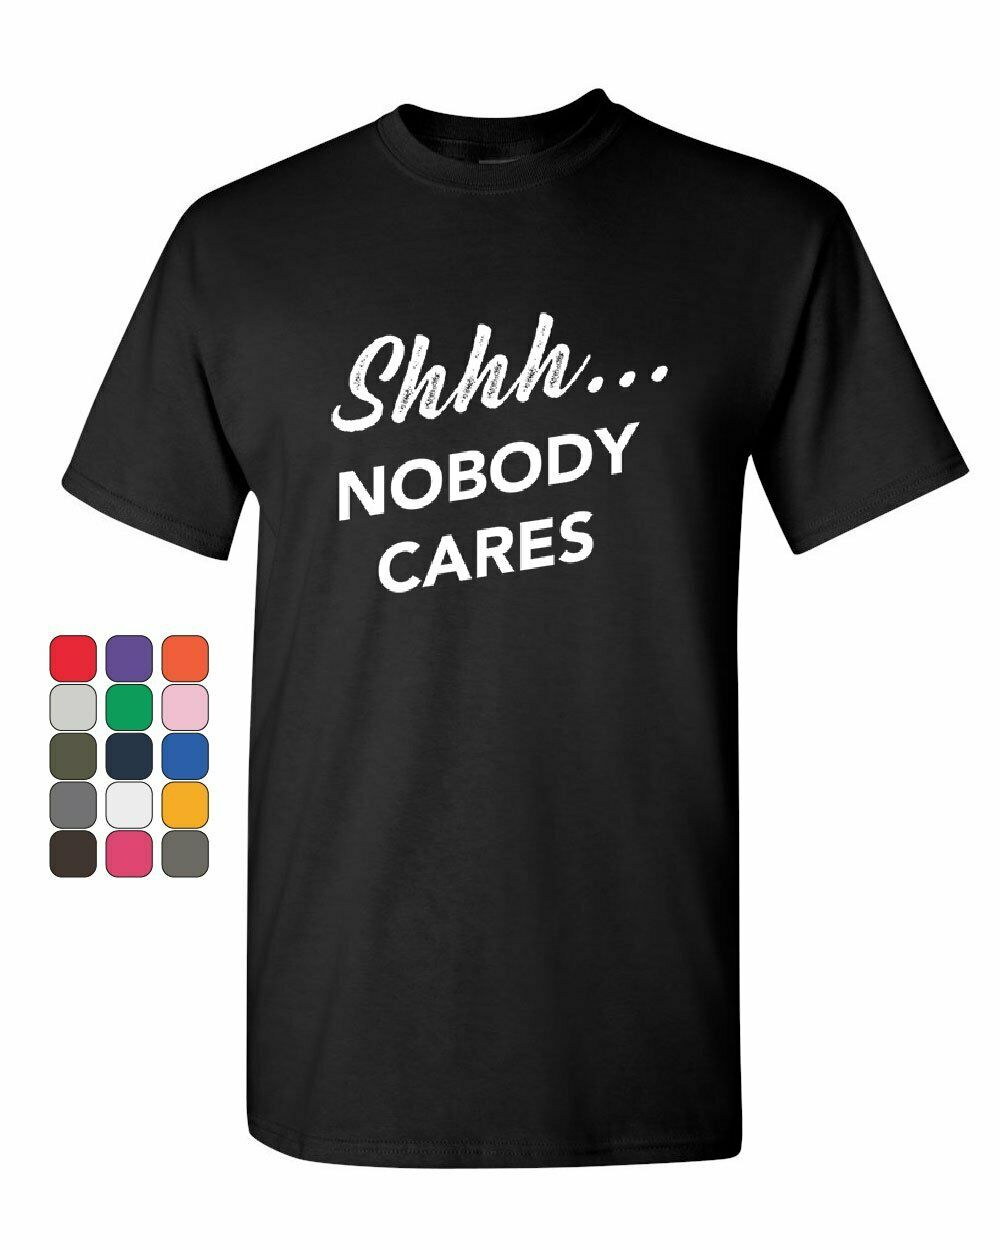 Shhh No One Care  Mens T-Shirt